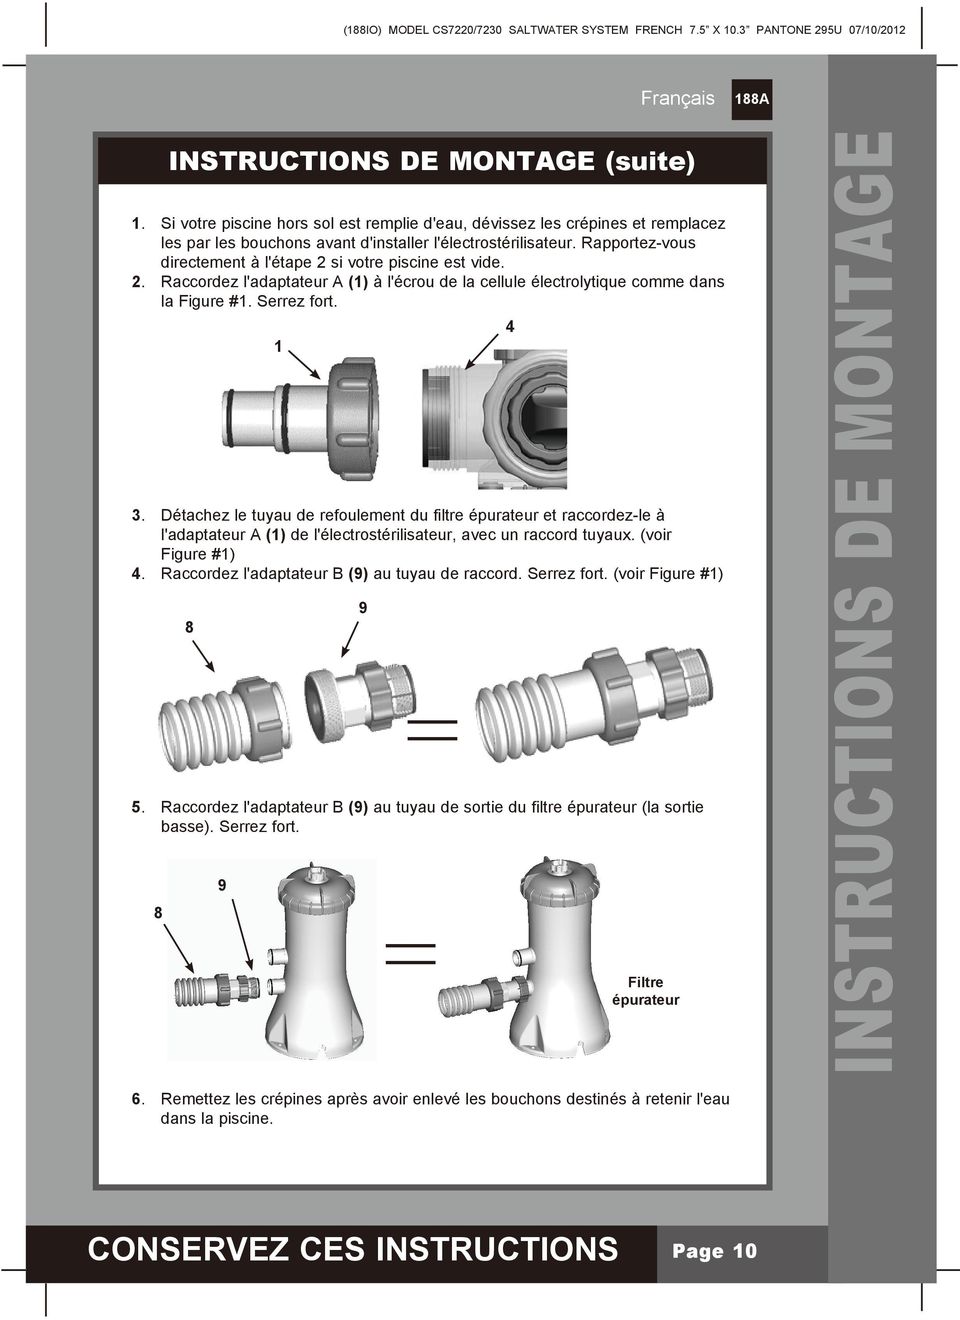 Détachez le tuyau de refoulement du filtre épurateur et raccordez-le à l'adaptateur A (1) de l'électrostérilisateur, avec un raccord tuyaux. (voir Figure #1) 4.